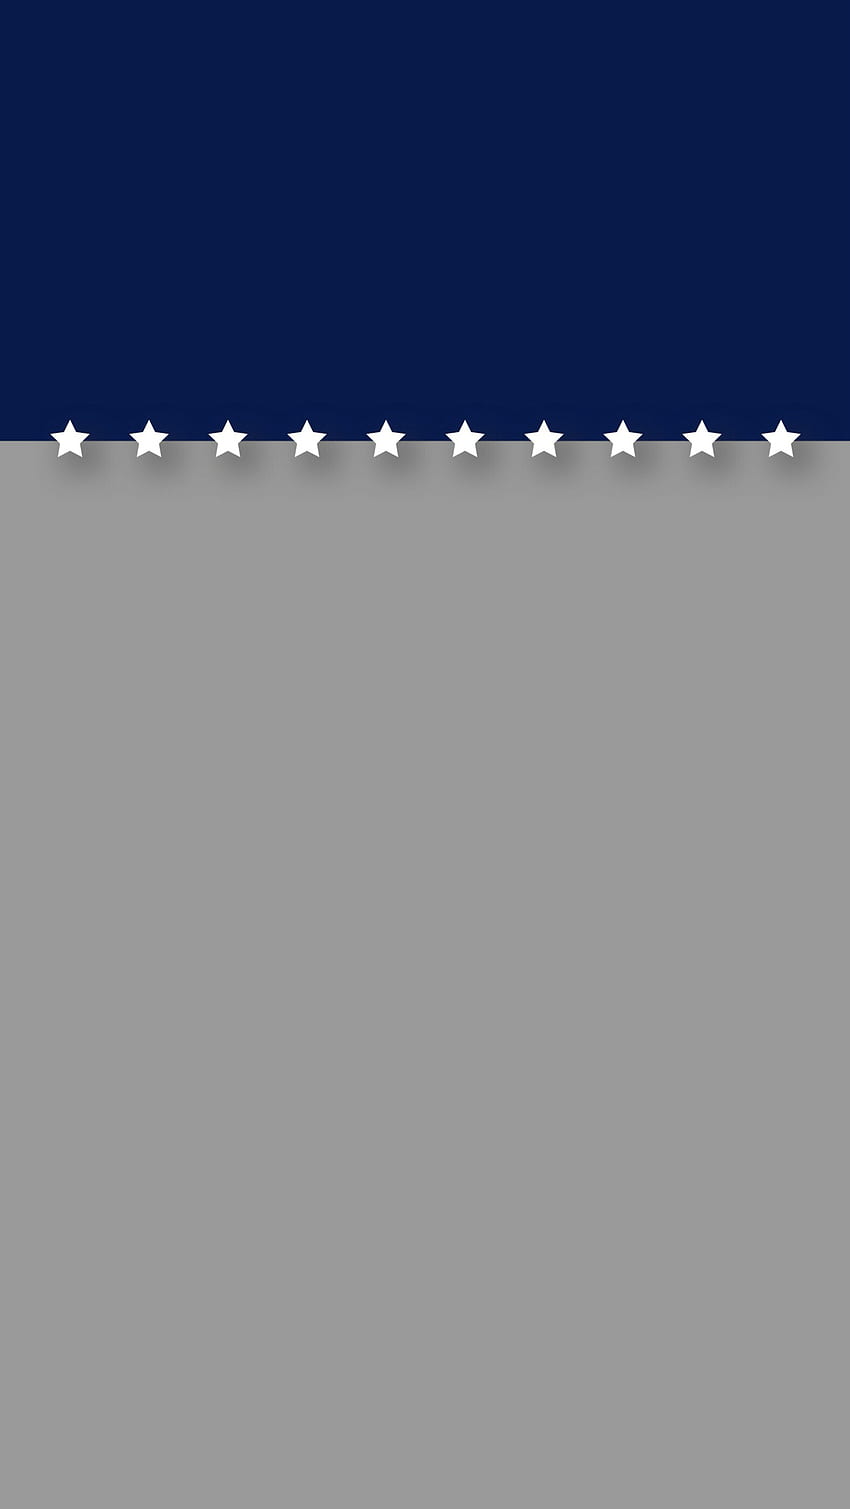 Minimal biru dan abu-abu dengan layar kunci iPhone 6 Plus patriotik bintang. wallpaper ponsel HD